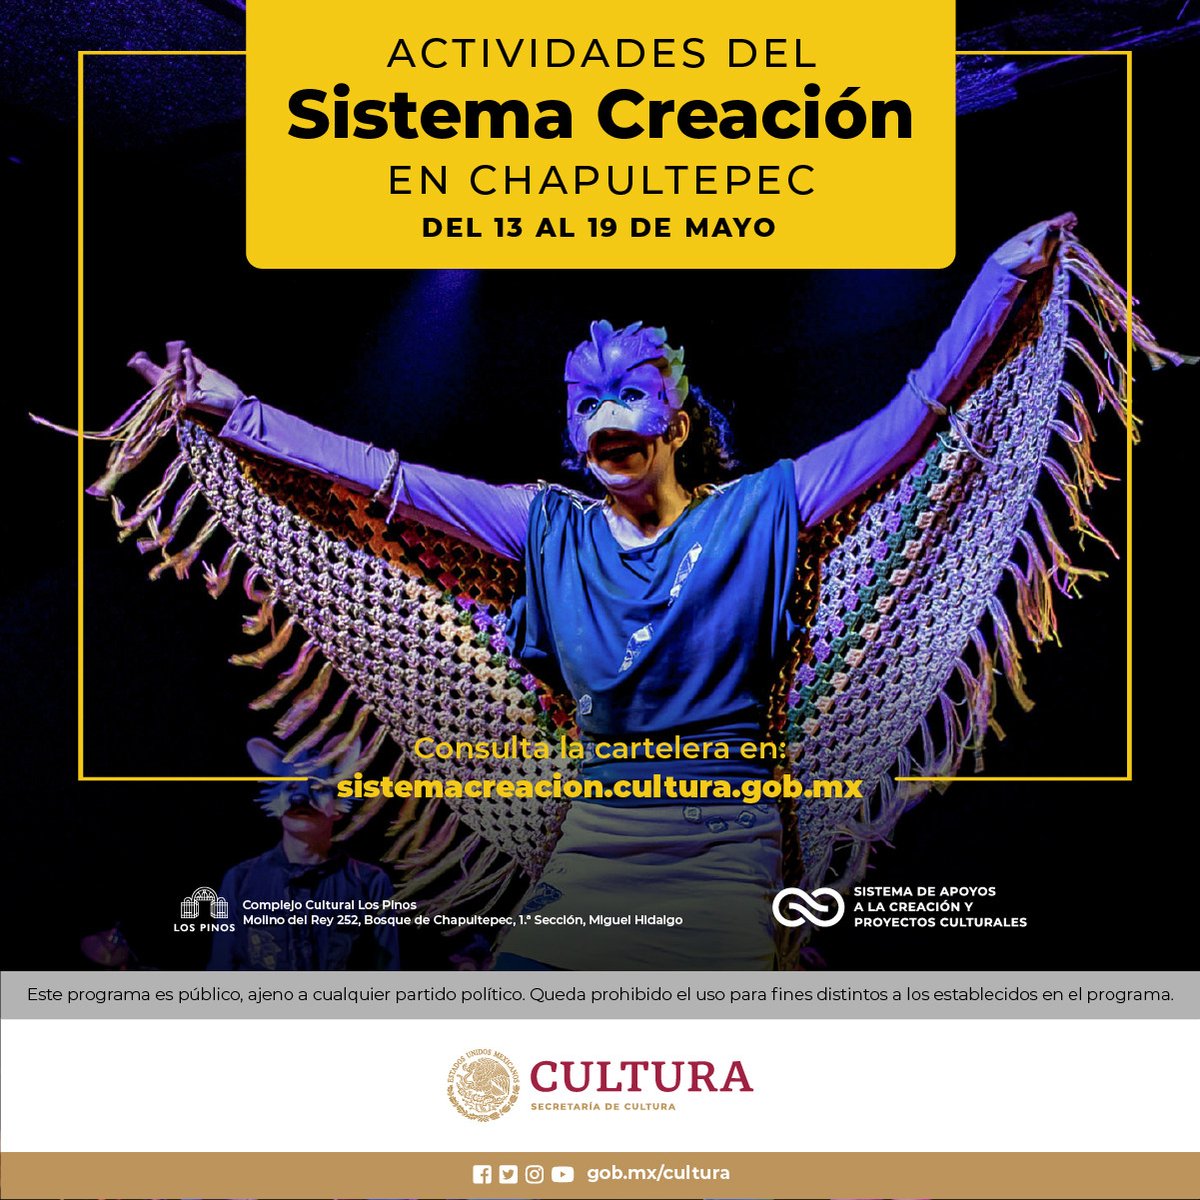 😍¡El Sistema Creación llevará este fin de semana a sus artistas al @CC_LosPinos, el @jardinescenico y el Centro de Cultura Ambiental como parte del proyecto #ChapultepecNaturalezaYCultura!

👉Consulta las actividades en goo.su/N8lmAMR

@cultura_mx